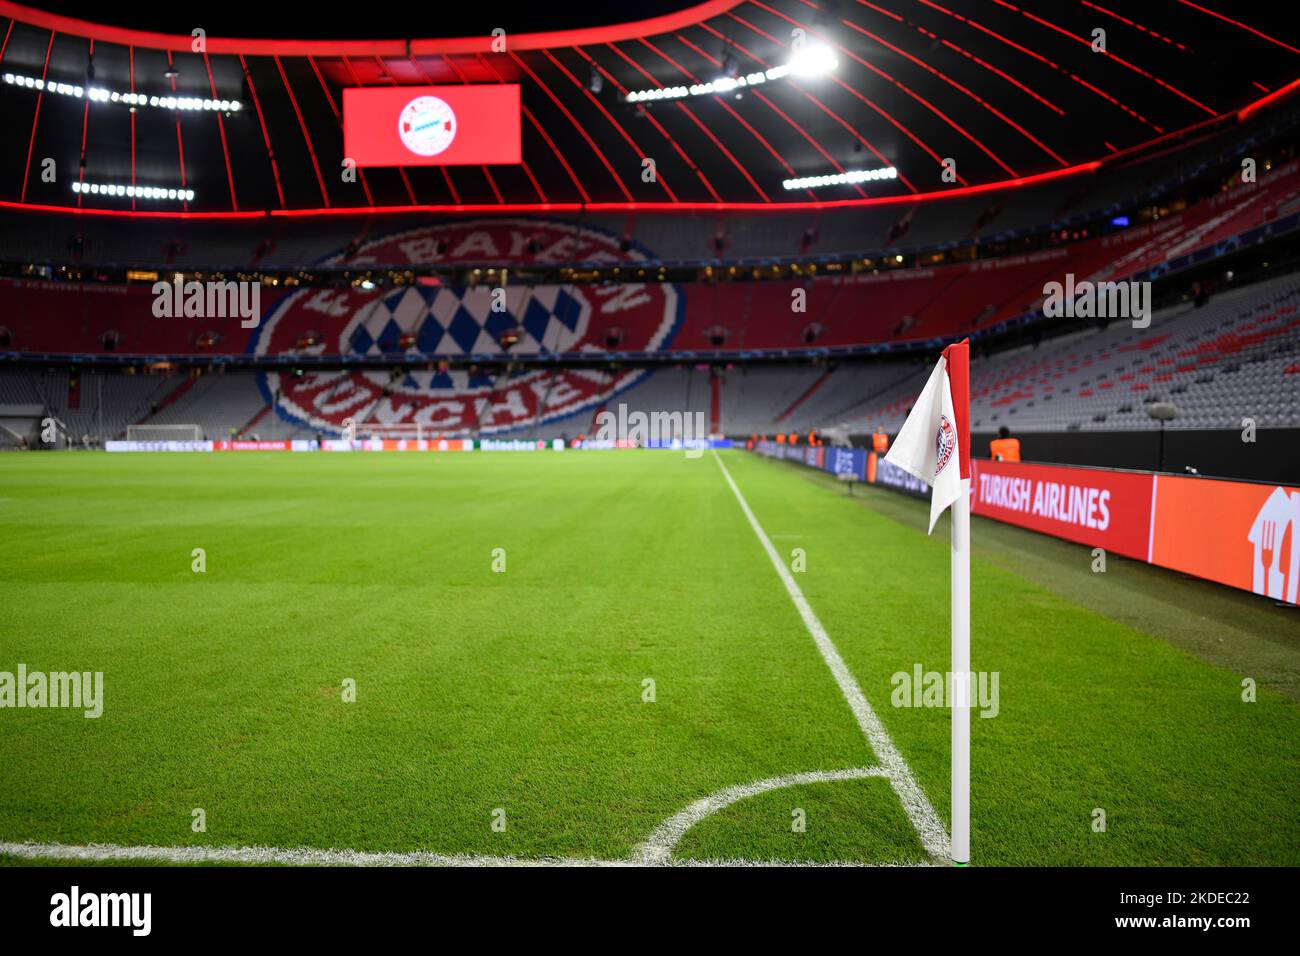 Übersicht Interieur Allianz Arena, leer, Eckflagge mit Logo FC Bayern München, Anzeigetafel, München, Bayern, Deutschland Stockfoto